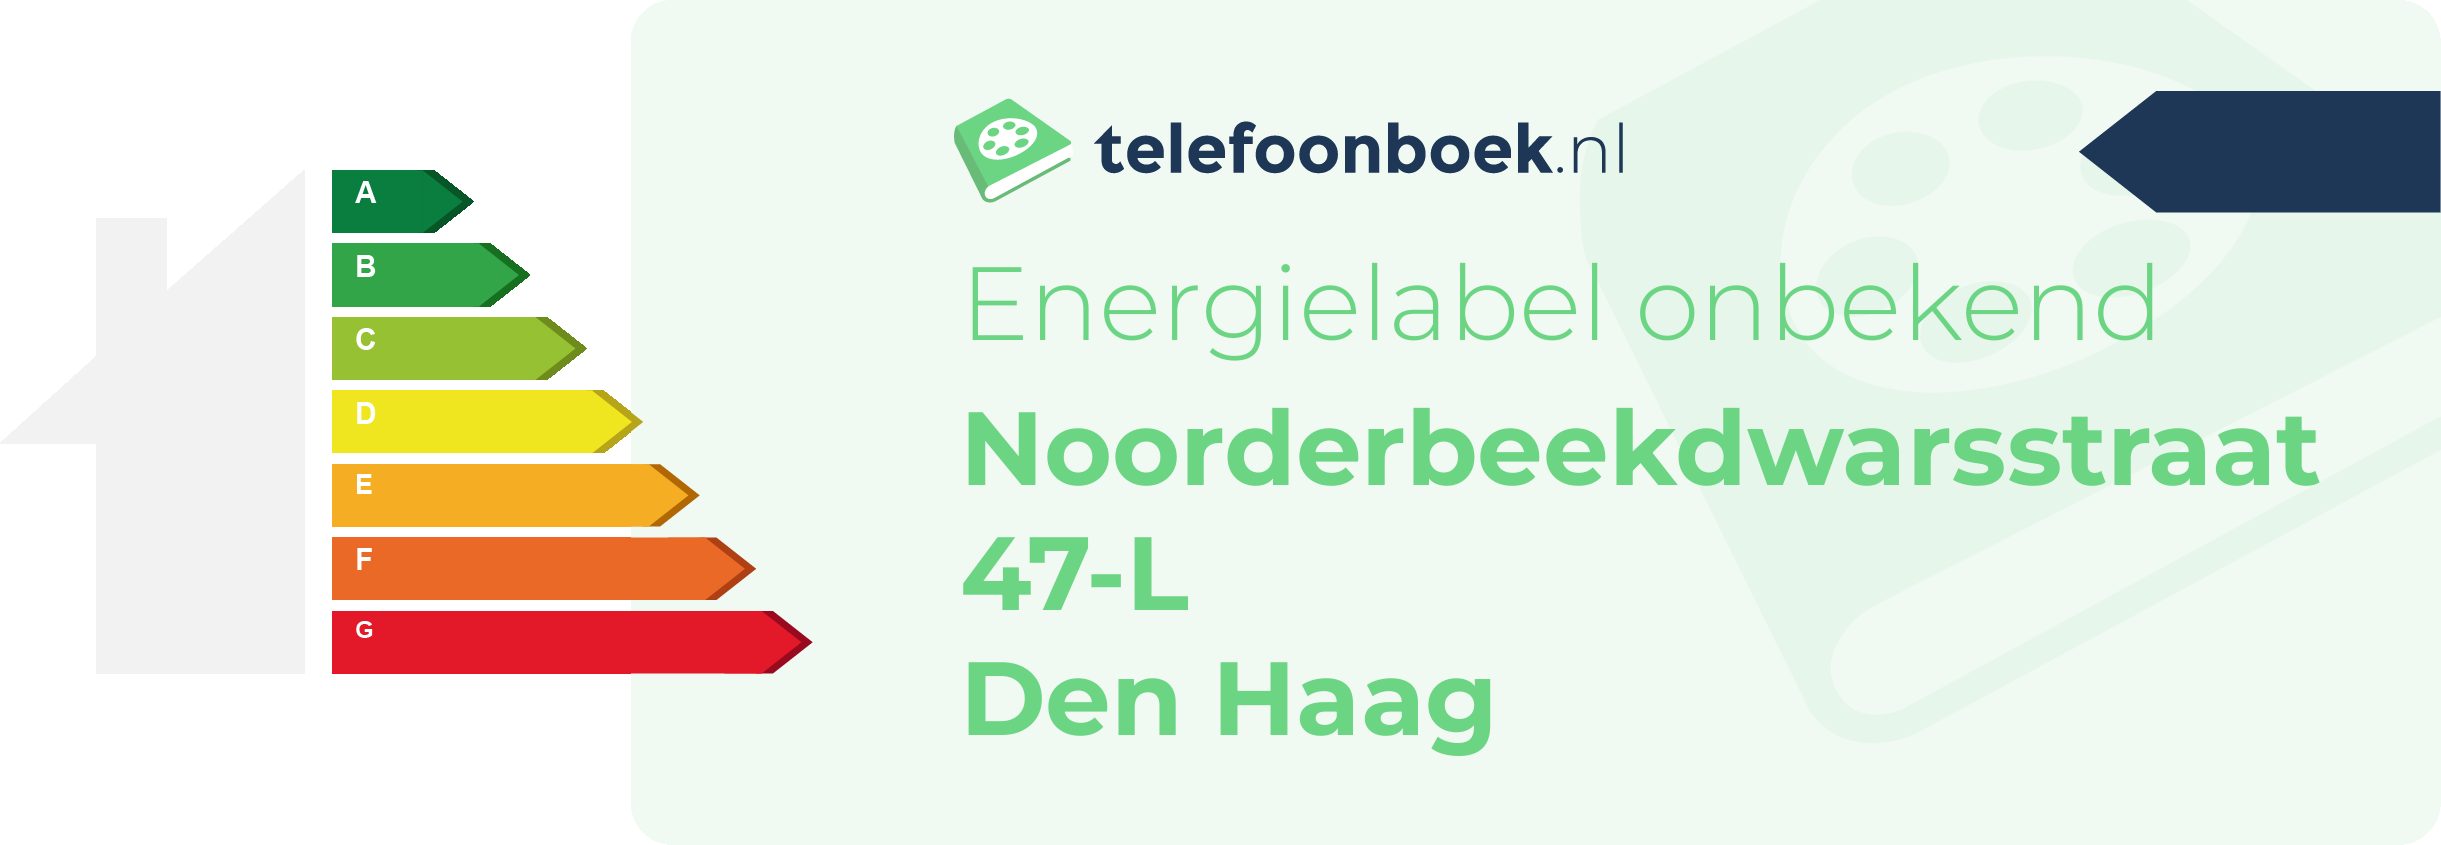 Energielabel Noorderbeekdwarsstraat 47-L Den Haag